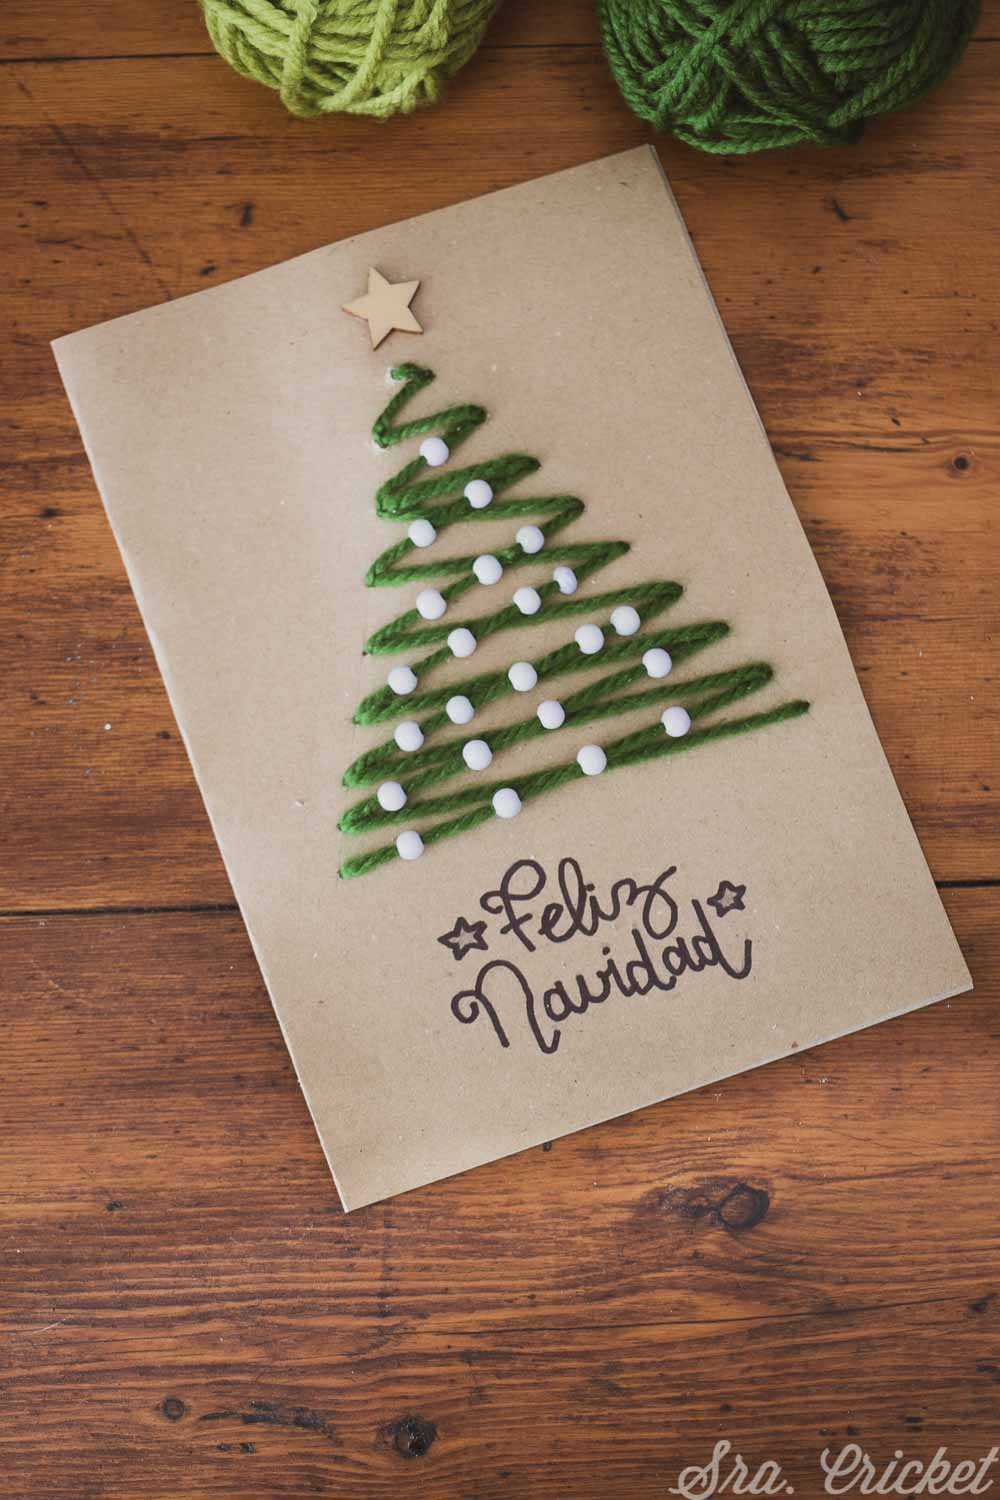 tarjeta navideña con arbol de navidad cosido bordado